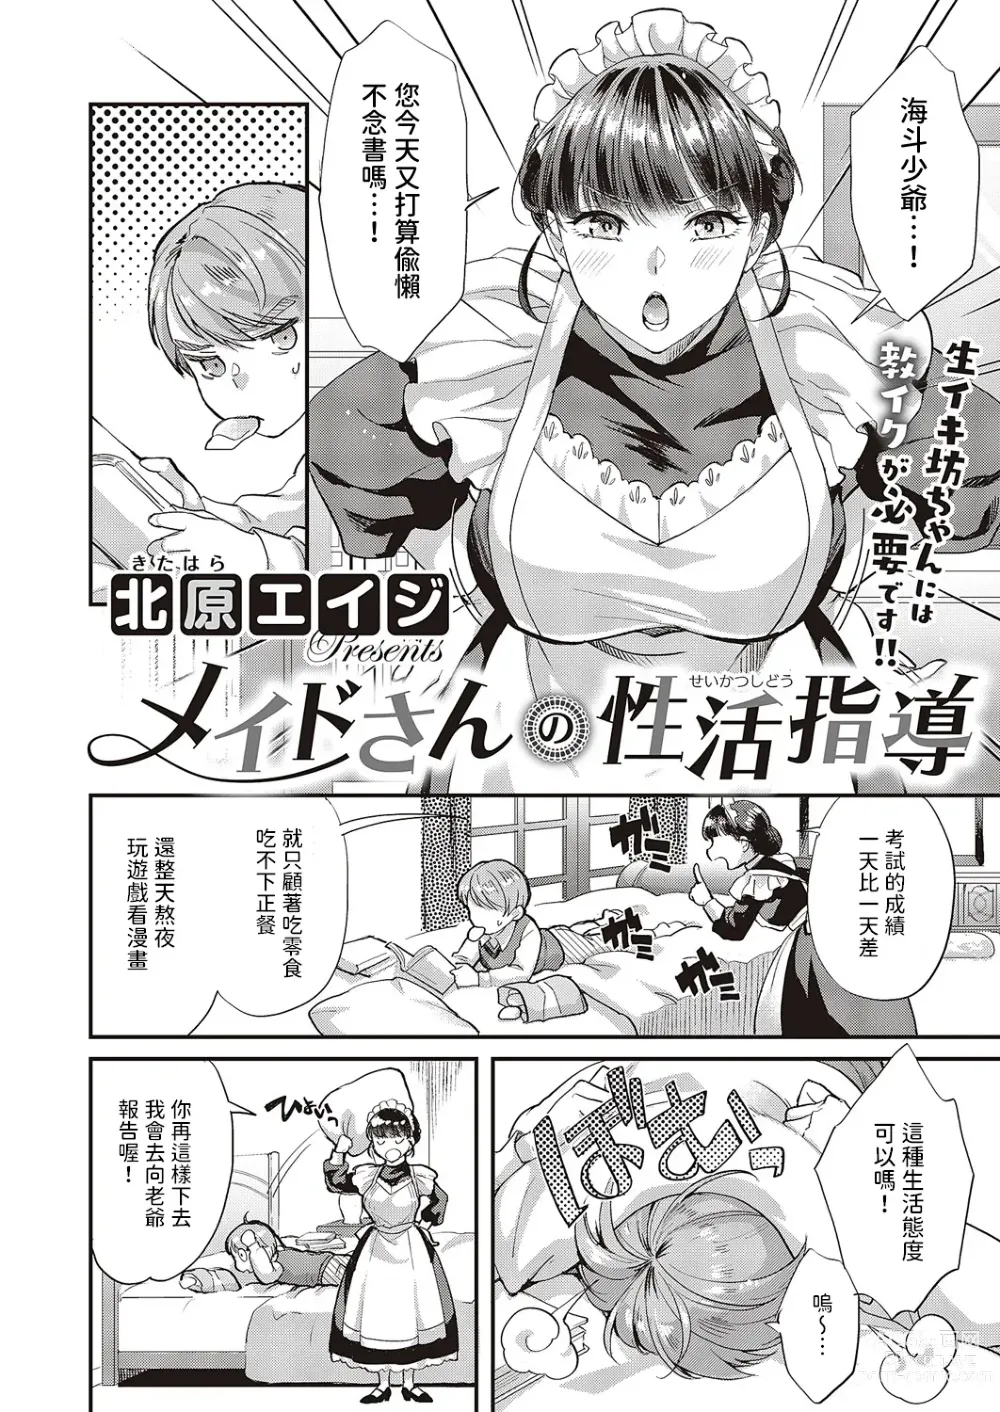 Page 2 of manga Maid-san no Seikatsu Shidou